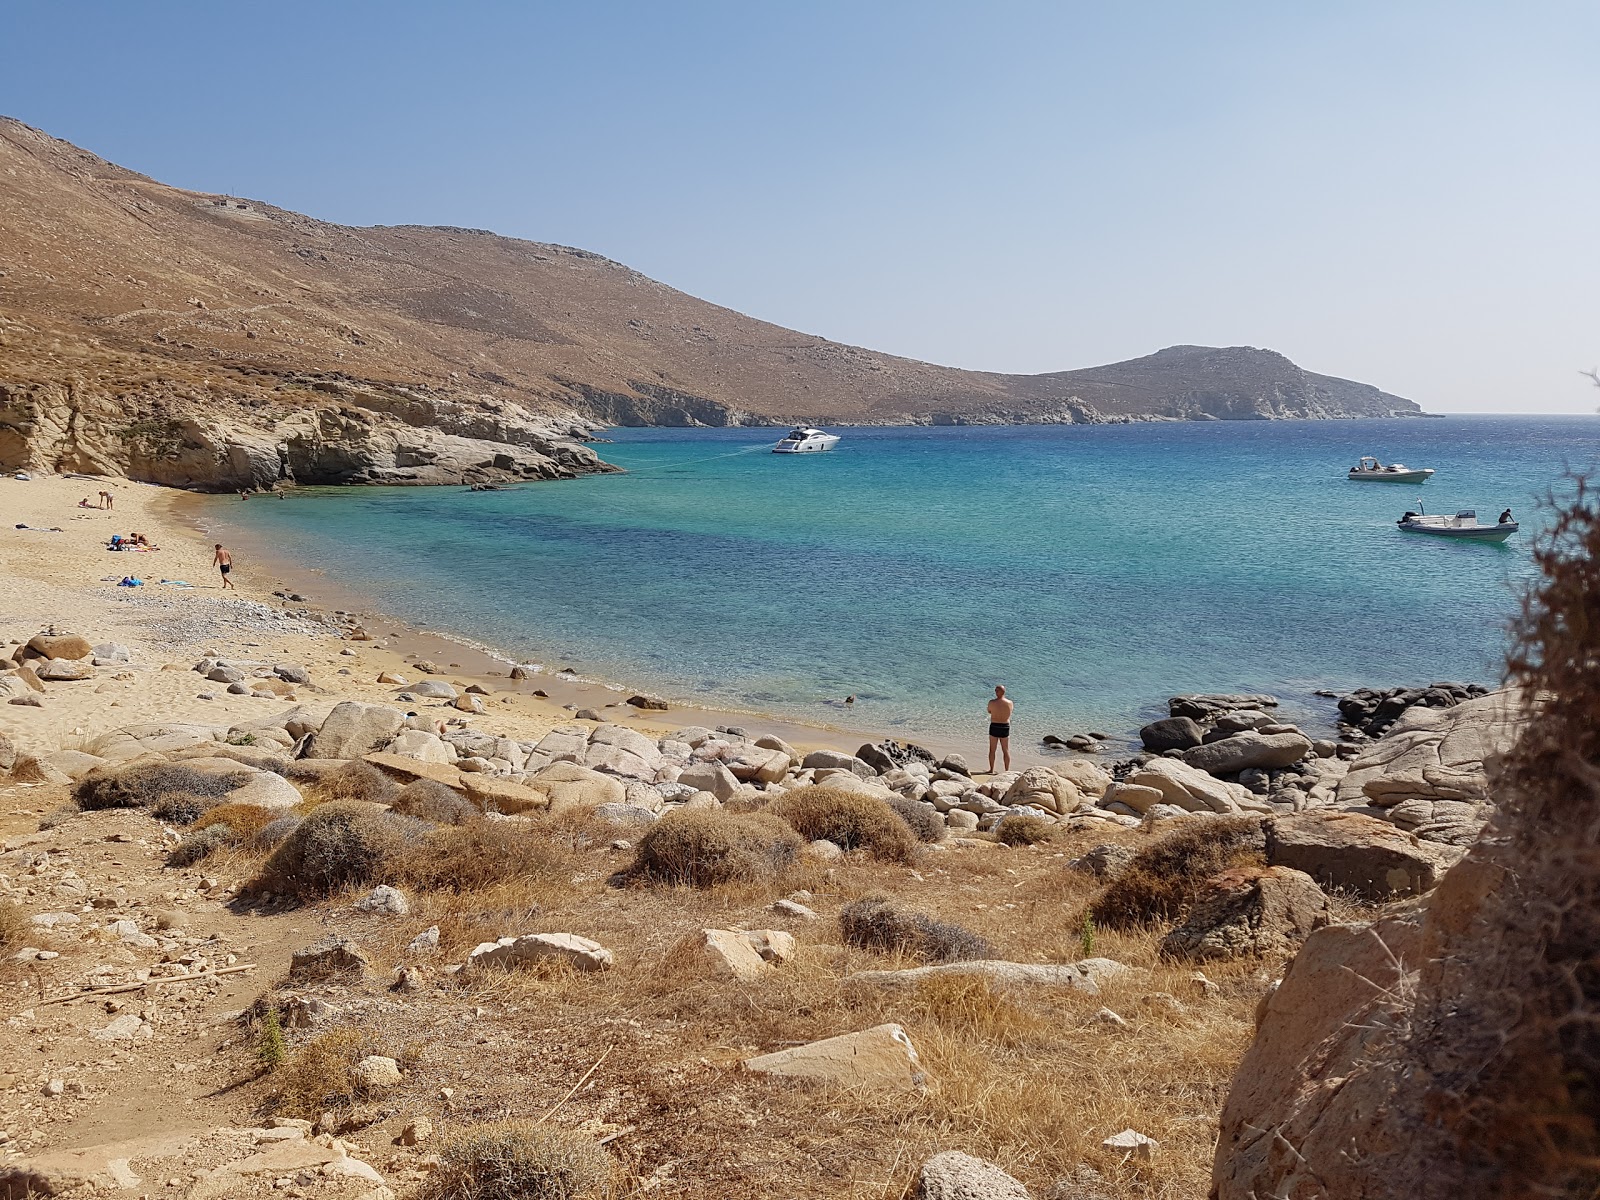 Kalo Ampeli'in fotoğrafı kahverengi kum yüzey ile